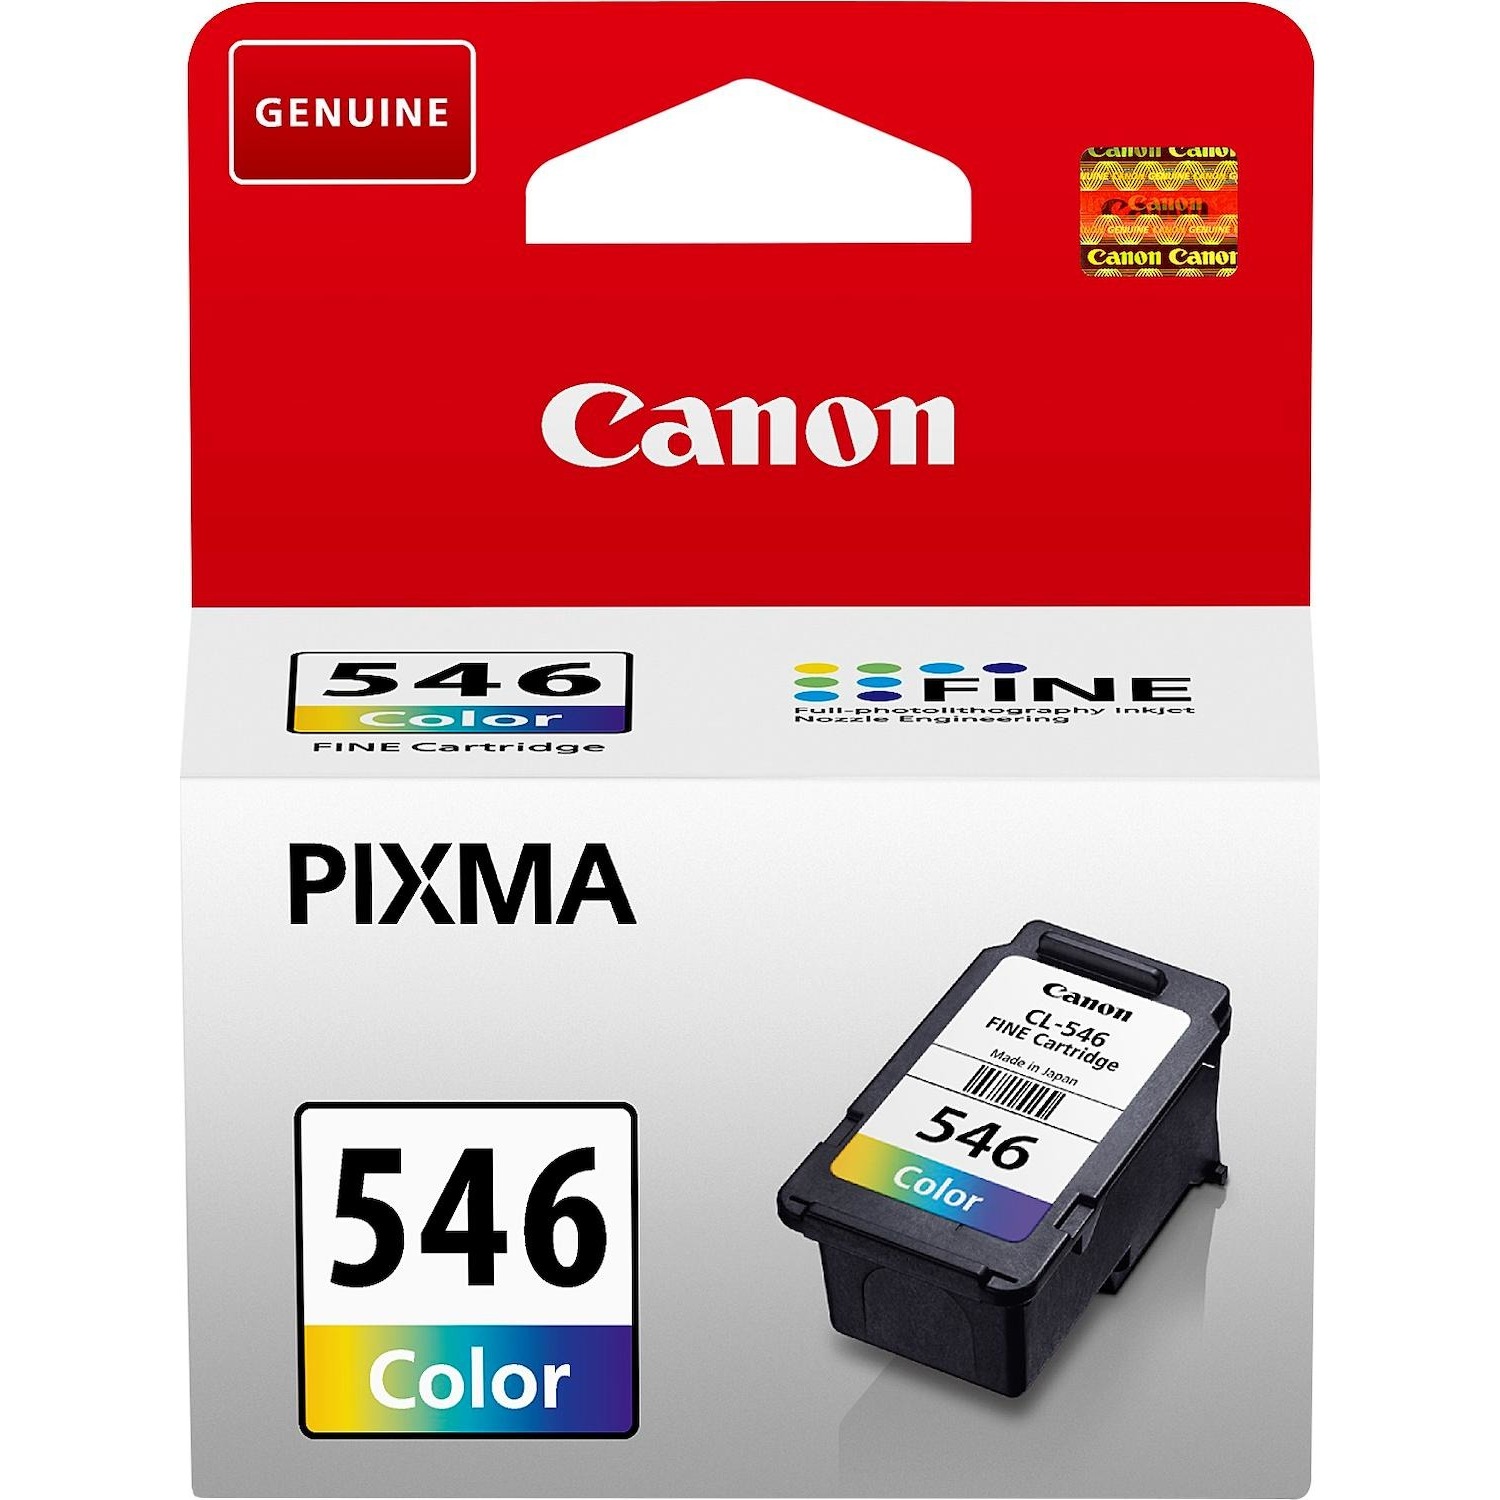 Immagine per Cartuccia Canon CL546 colori                      per IP2850 IP2855 MG2450 MG2455 MG2550 MG2555 da DIMOStore